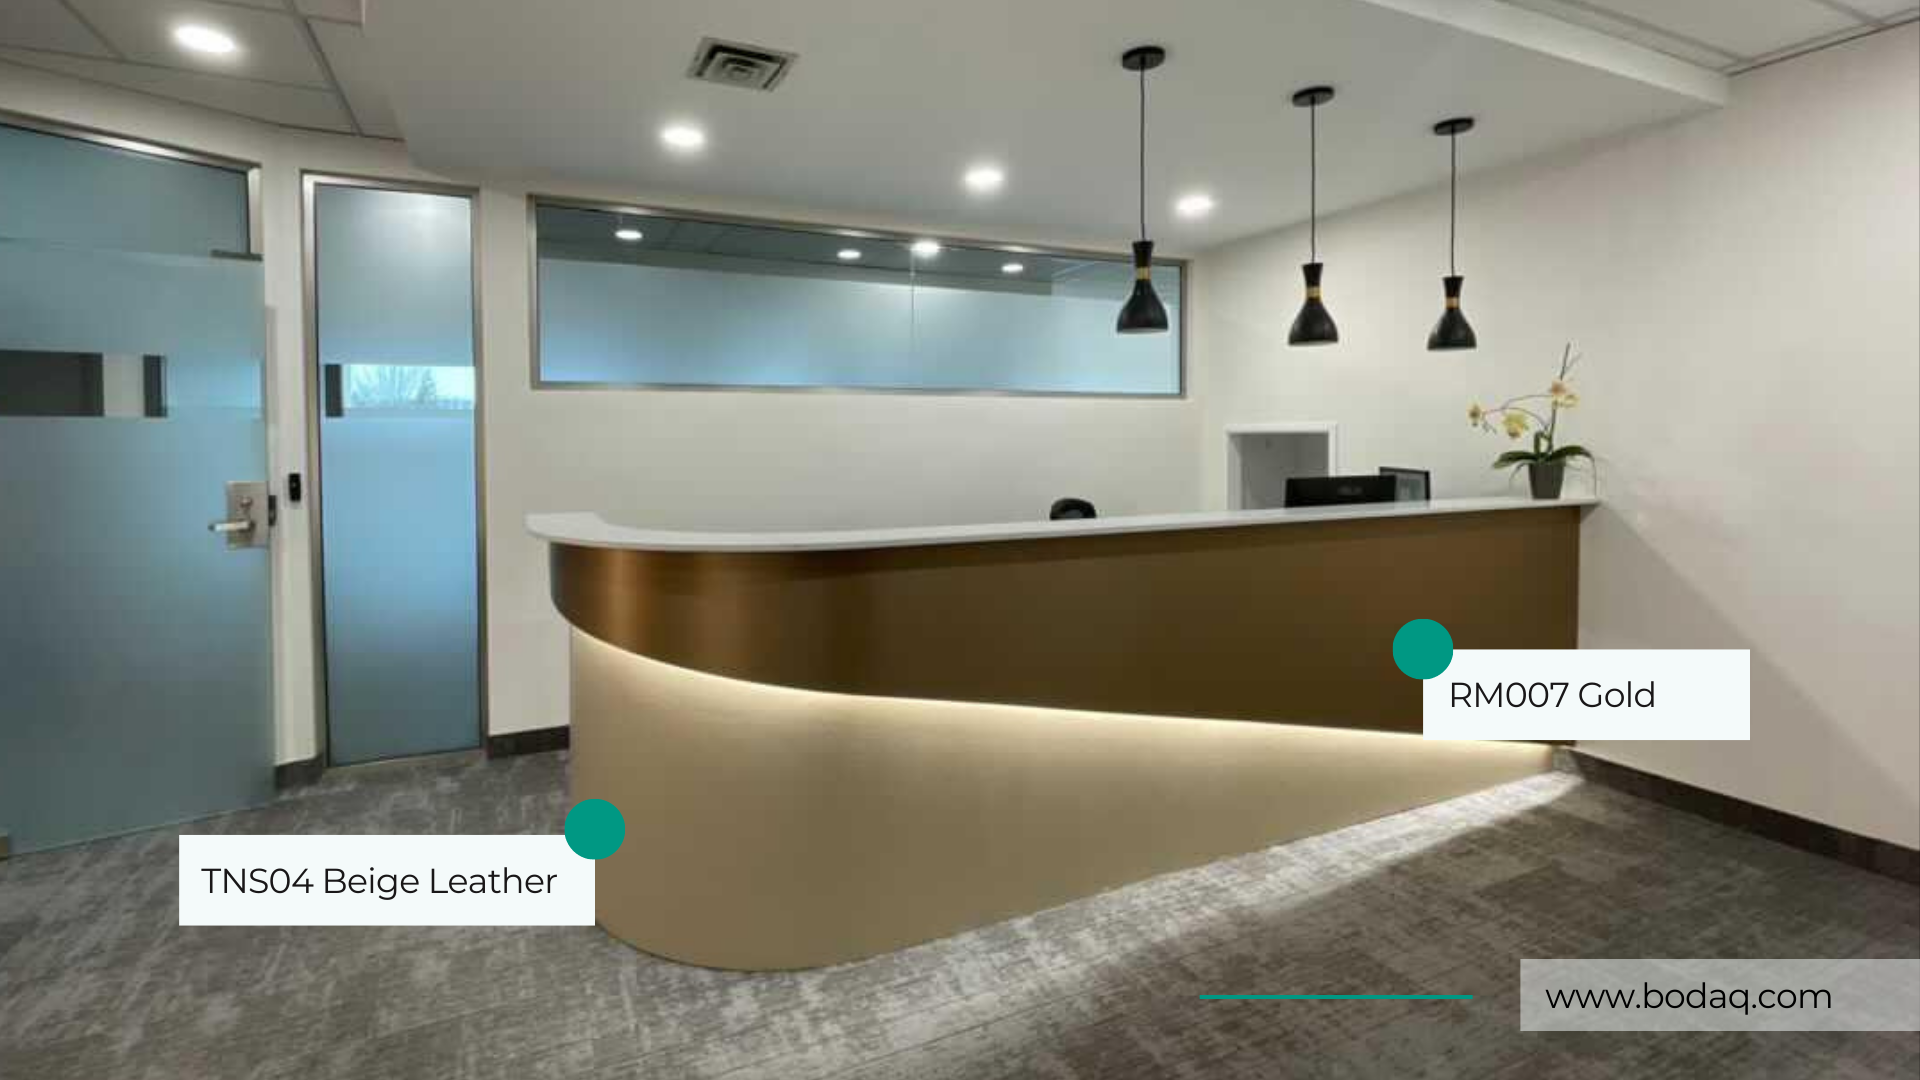 Modern Office Design with Bodaq Films ⋆ Bodaq® by Hyundai®